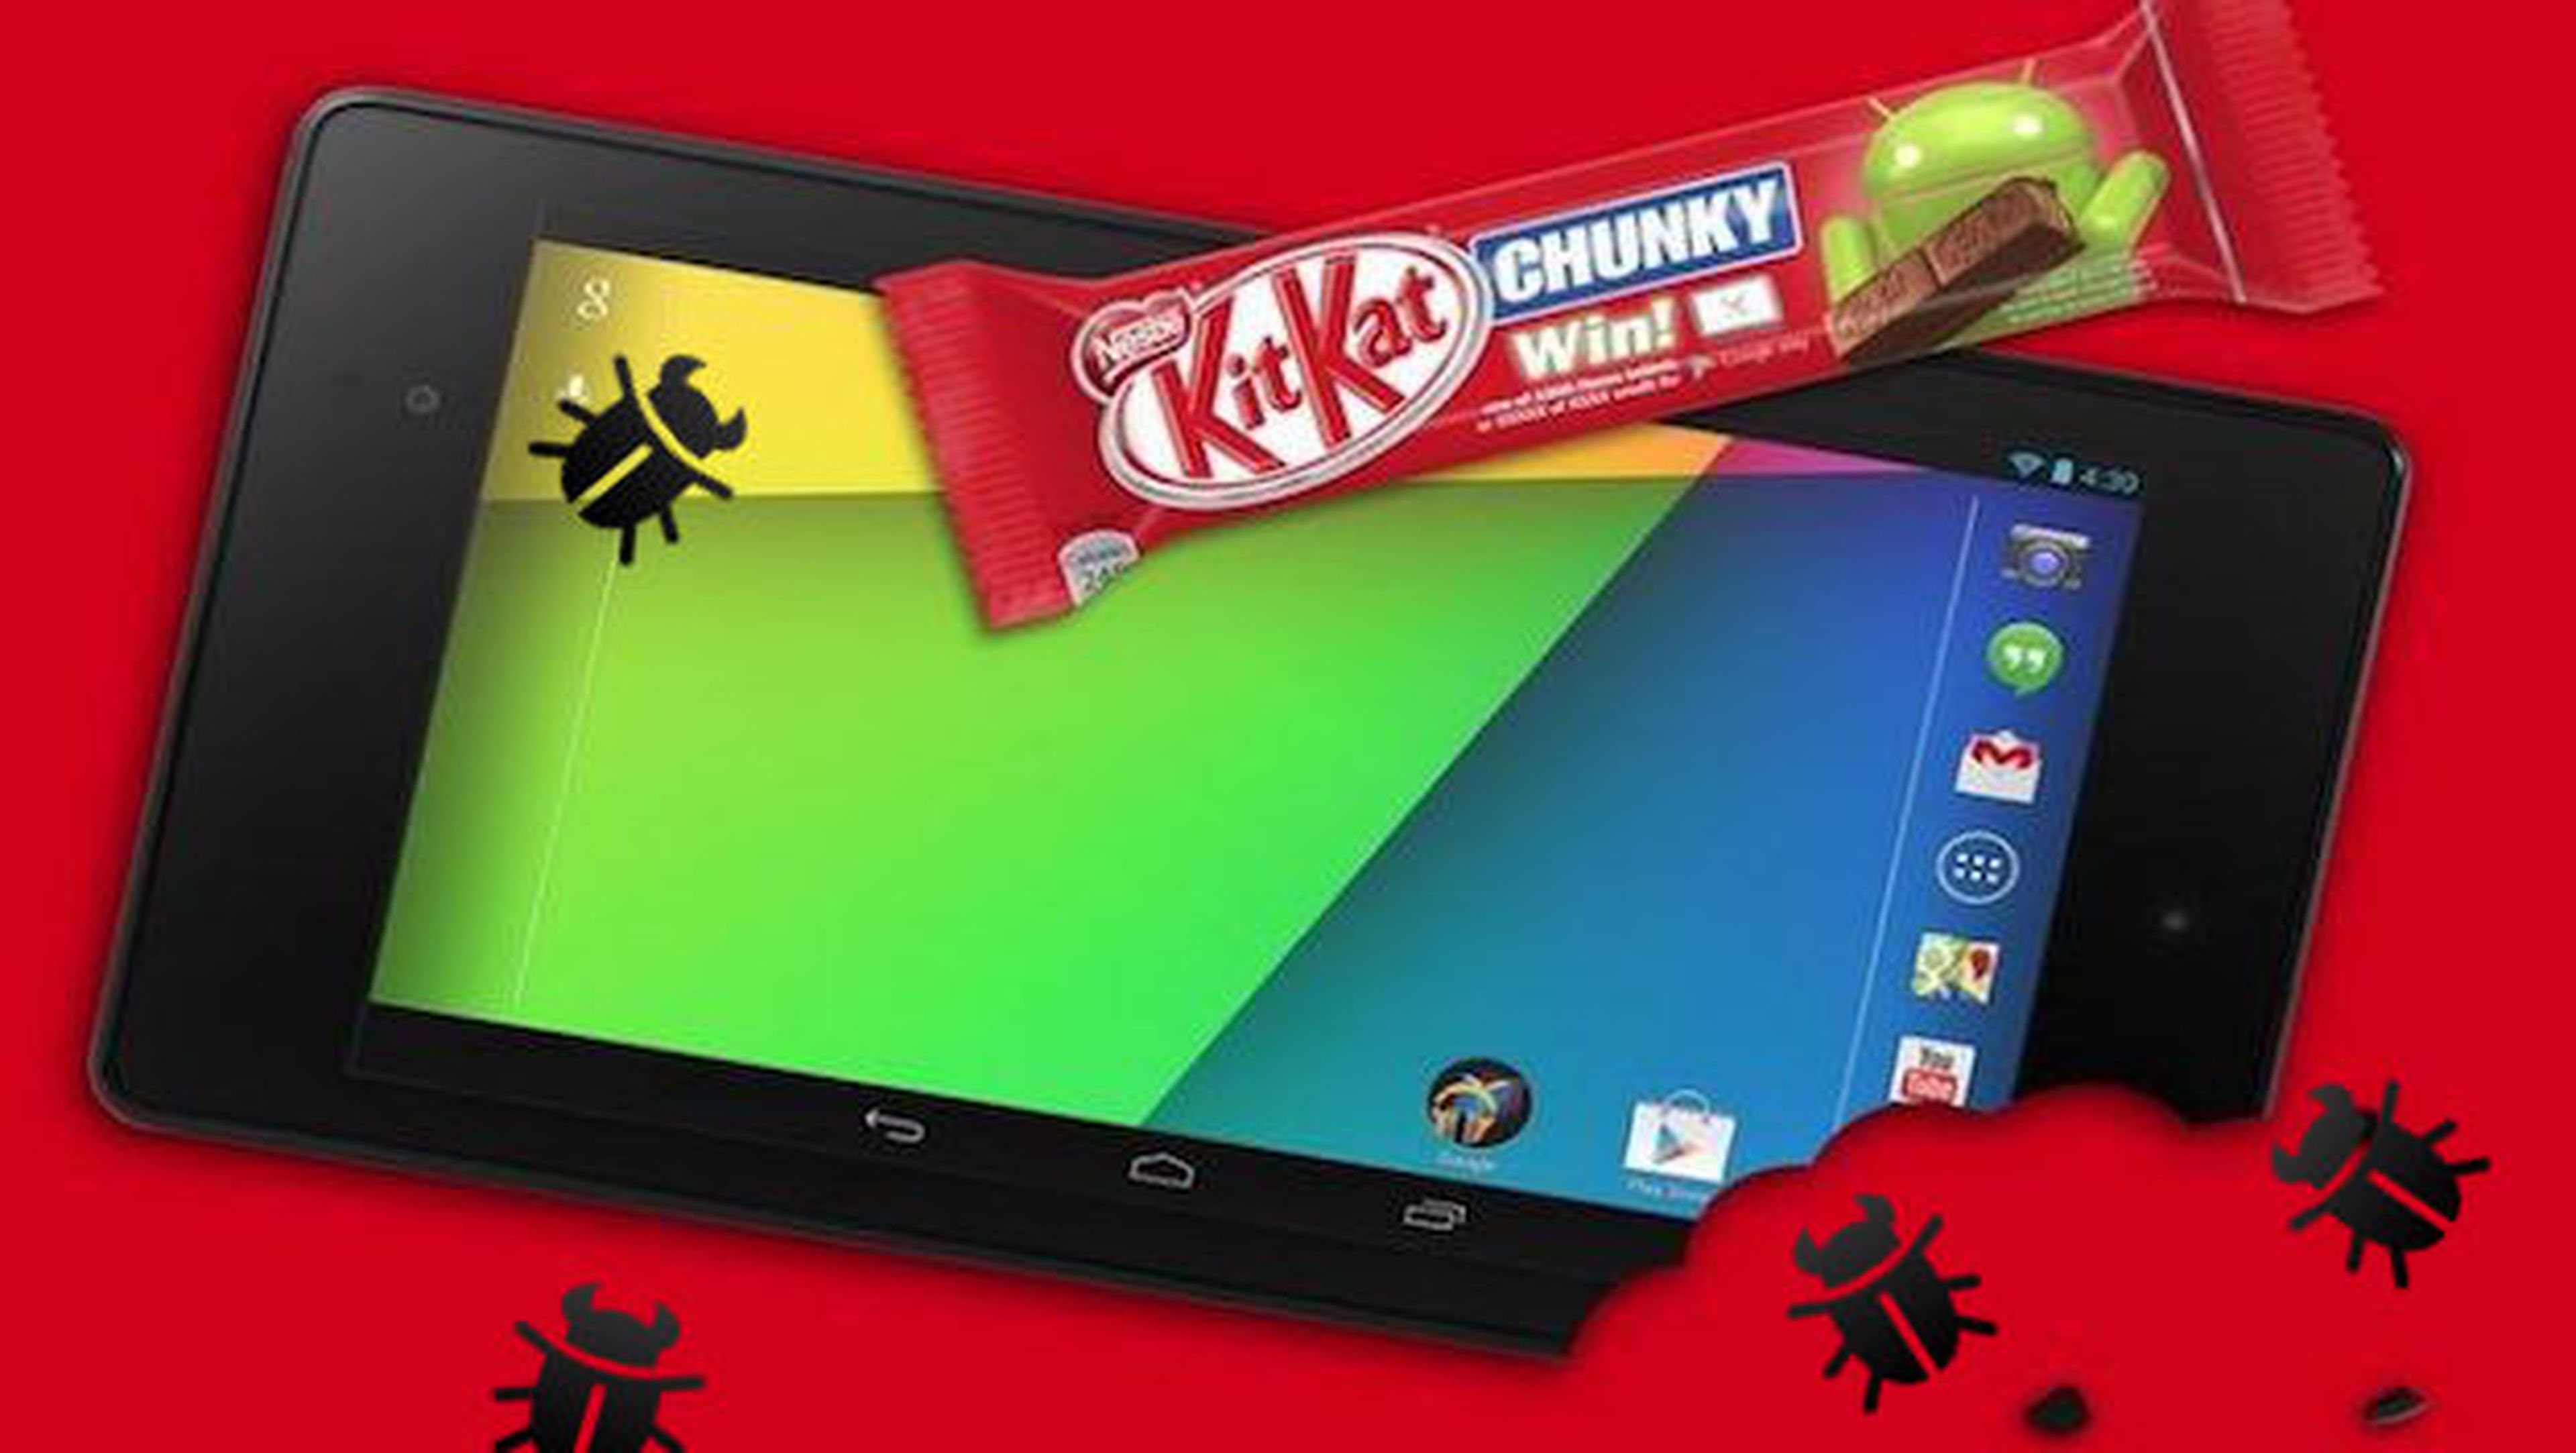 Actualización a Android KitKat crea problemas en el Nexus 7